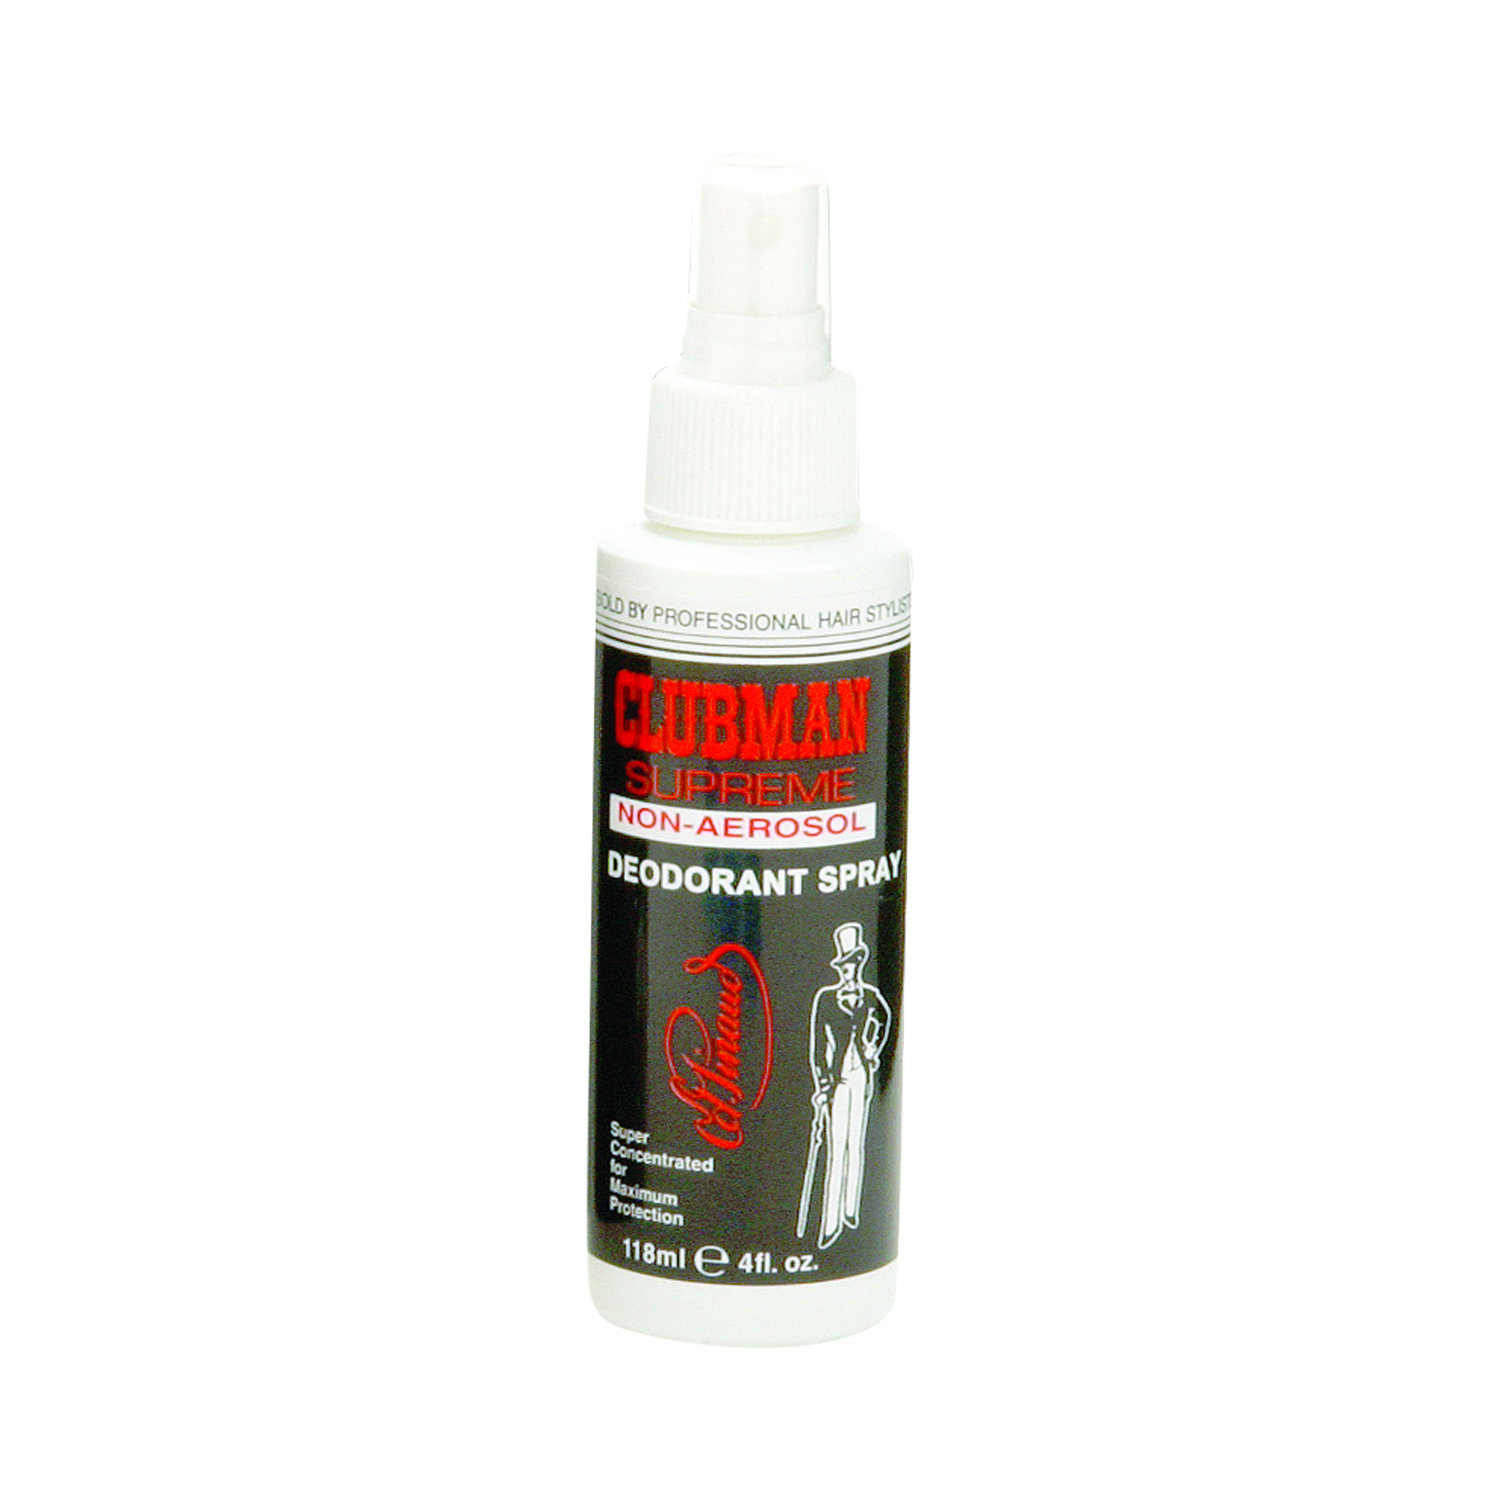 Clubman Pinaud - Deodorant Spray